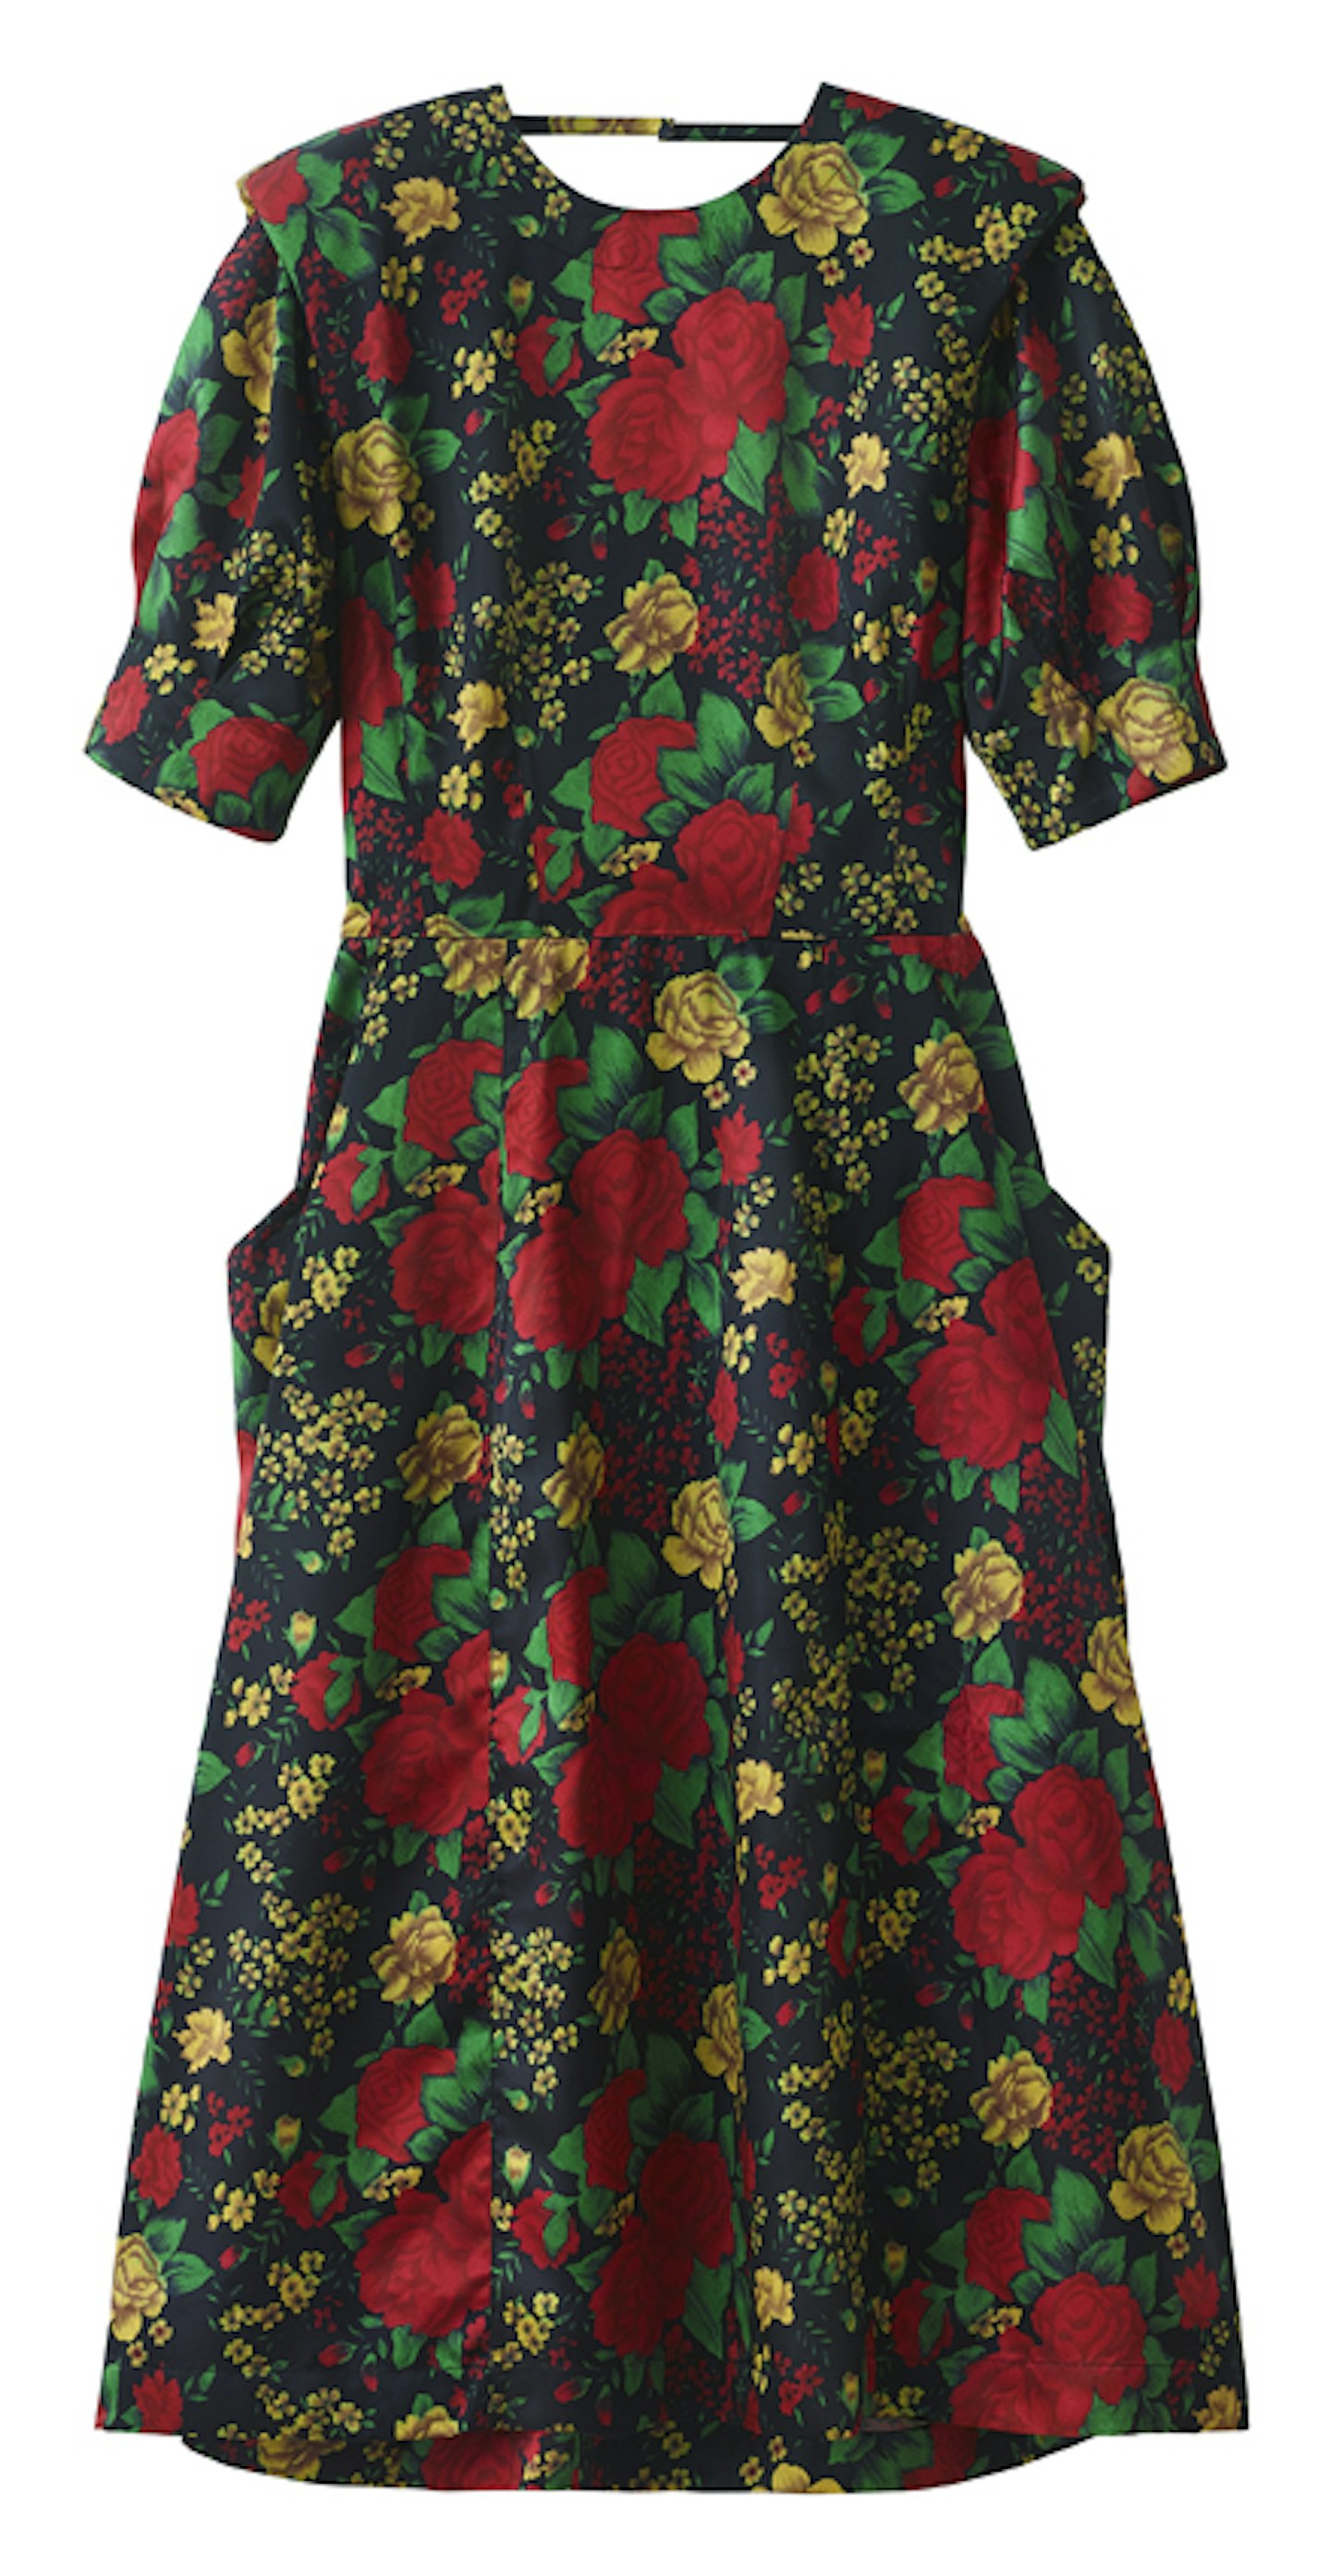 TOGA ARCHIVES x H&M, Floral Cut-Out Dress, £119.99